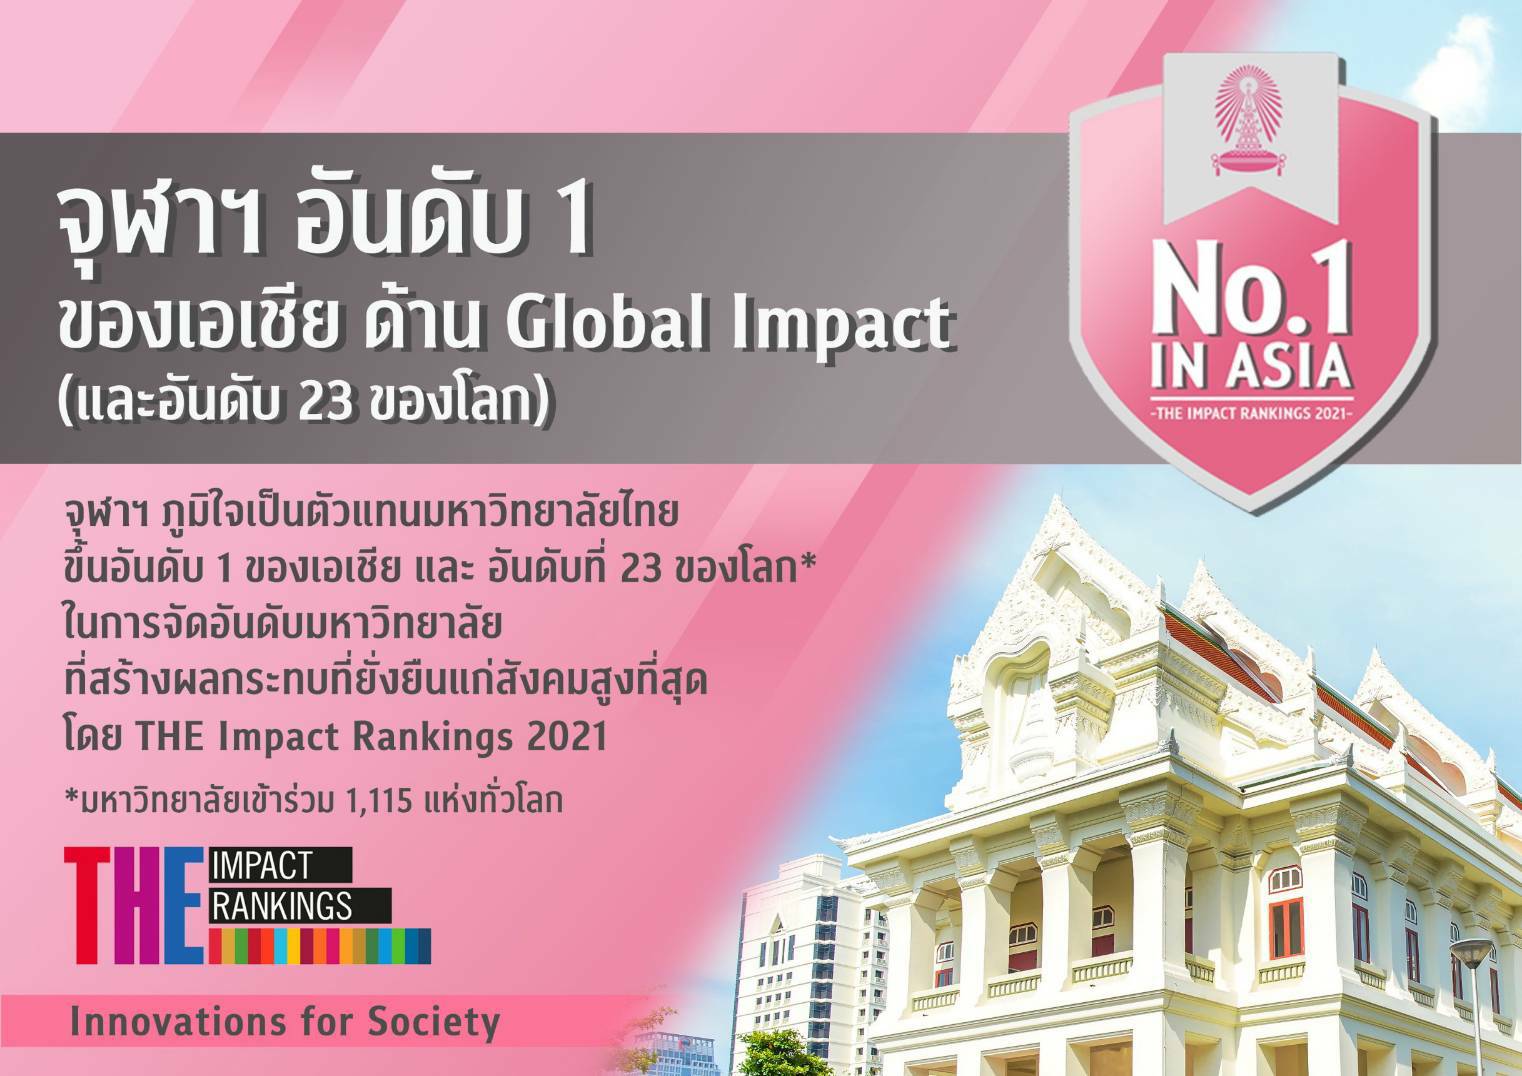 Chulalongkorn University Global Impact